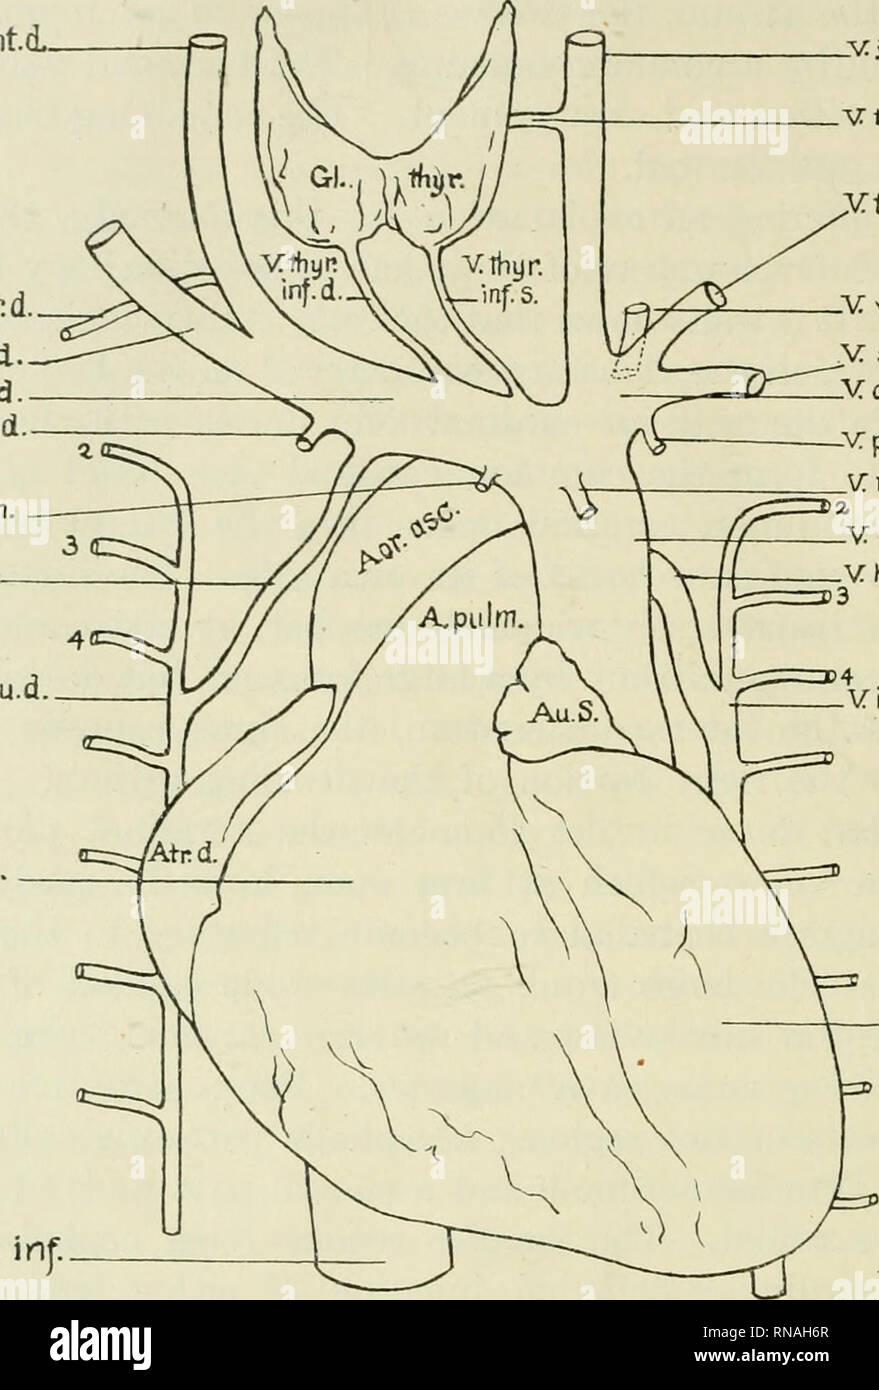 . Le dossier anatomique. Anatomie Anatomie ;. 194 C. SMITH WILBUR vjug.int.d. . Vfnferc supnd. Vsubcl.d. Vanom. d. Vmont irttd. v : %m. v : interc. Su.d V&amp;nt. d. v:ca/. Jnj :. -Vjug.ints. VthyKfTied.S. Xtrans, pap. -V verfeb.s. y subel.s. -V anom.s. -V : peric. phr. v : mam. beaucoup. V CAV. ^haut. V'hem iaz 1 interc. V s. -Venf. S. SOi^'/^^er v Fig. 1 aspect ventrale du cœur et les veines thoraciques ABRÉVIATIONS UTILISÉES DANS LES FIGURES 1 ET 2 A.pulm., A. pulmonaire Aor.asc, aorta ascendens rta.d., Atrium dextrum Au.s., Auricula sinistra gl.thyr., Glandula thyreoidea V.anom.d., C. anonyma dextra V.anom.s., C. ano Banque D'Images